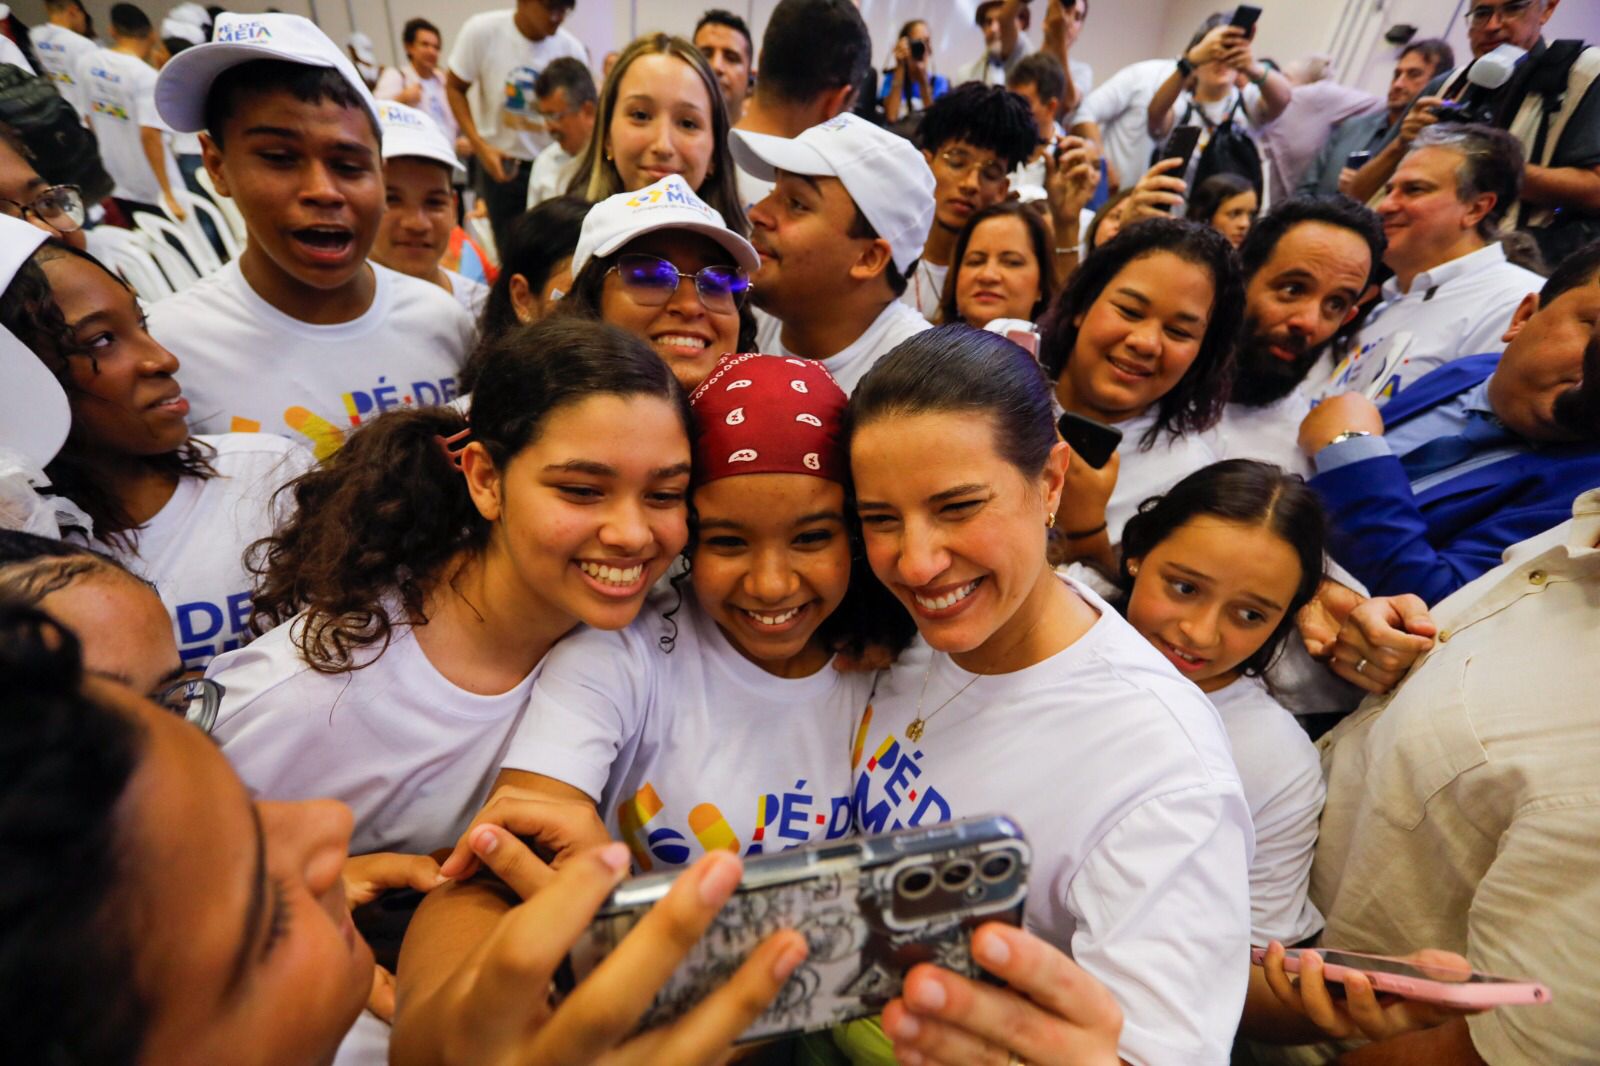  Governadora Raquel Lyra e Ministro da Educação lançam programa Pé-de-Meia em Pernambuco com investimento de R$ 500 milhões por ano.